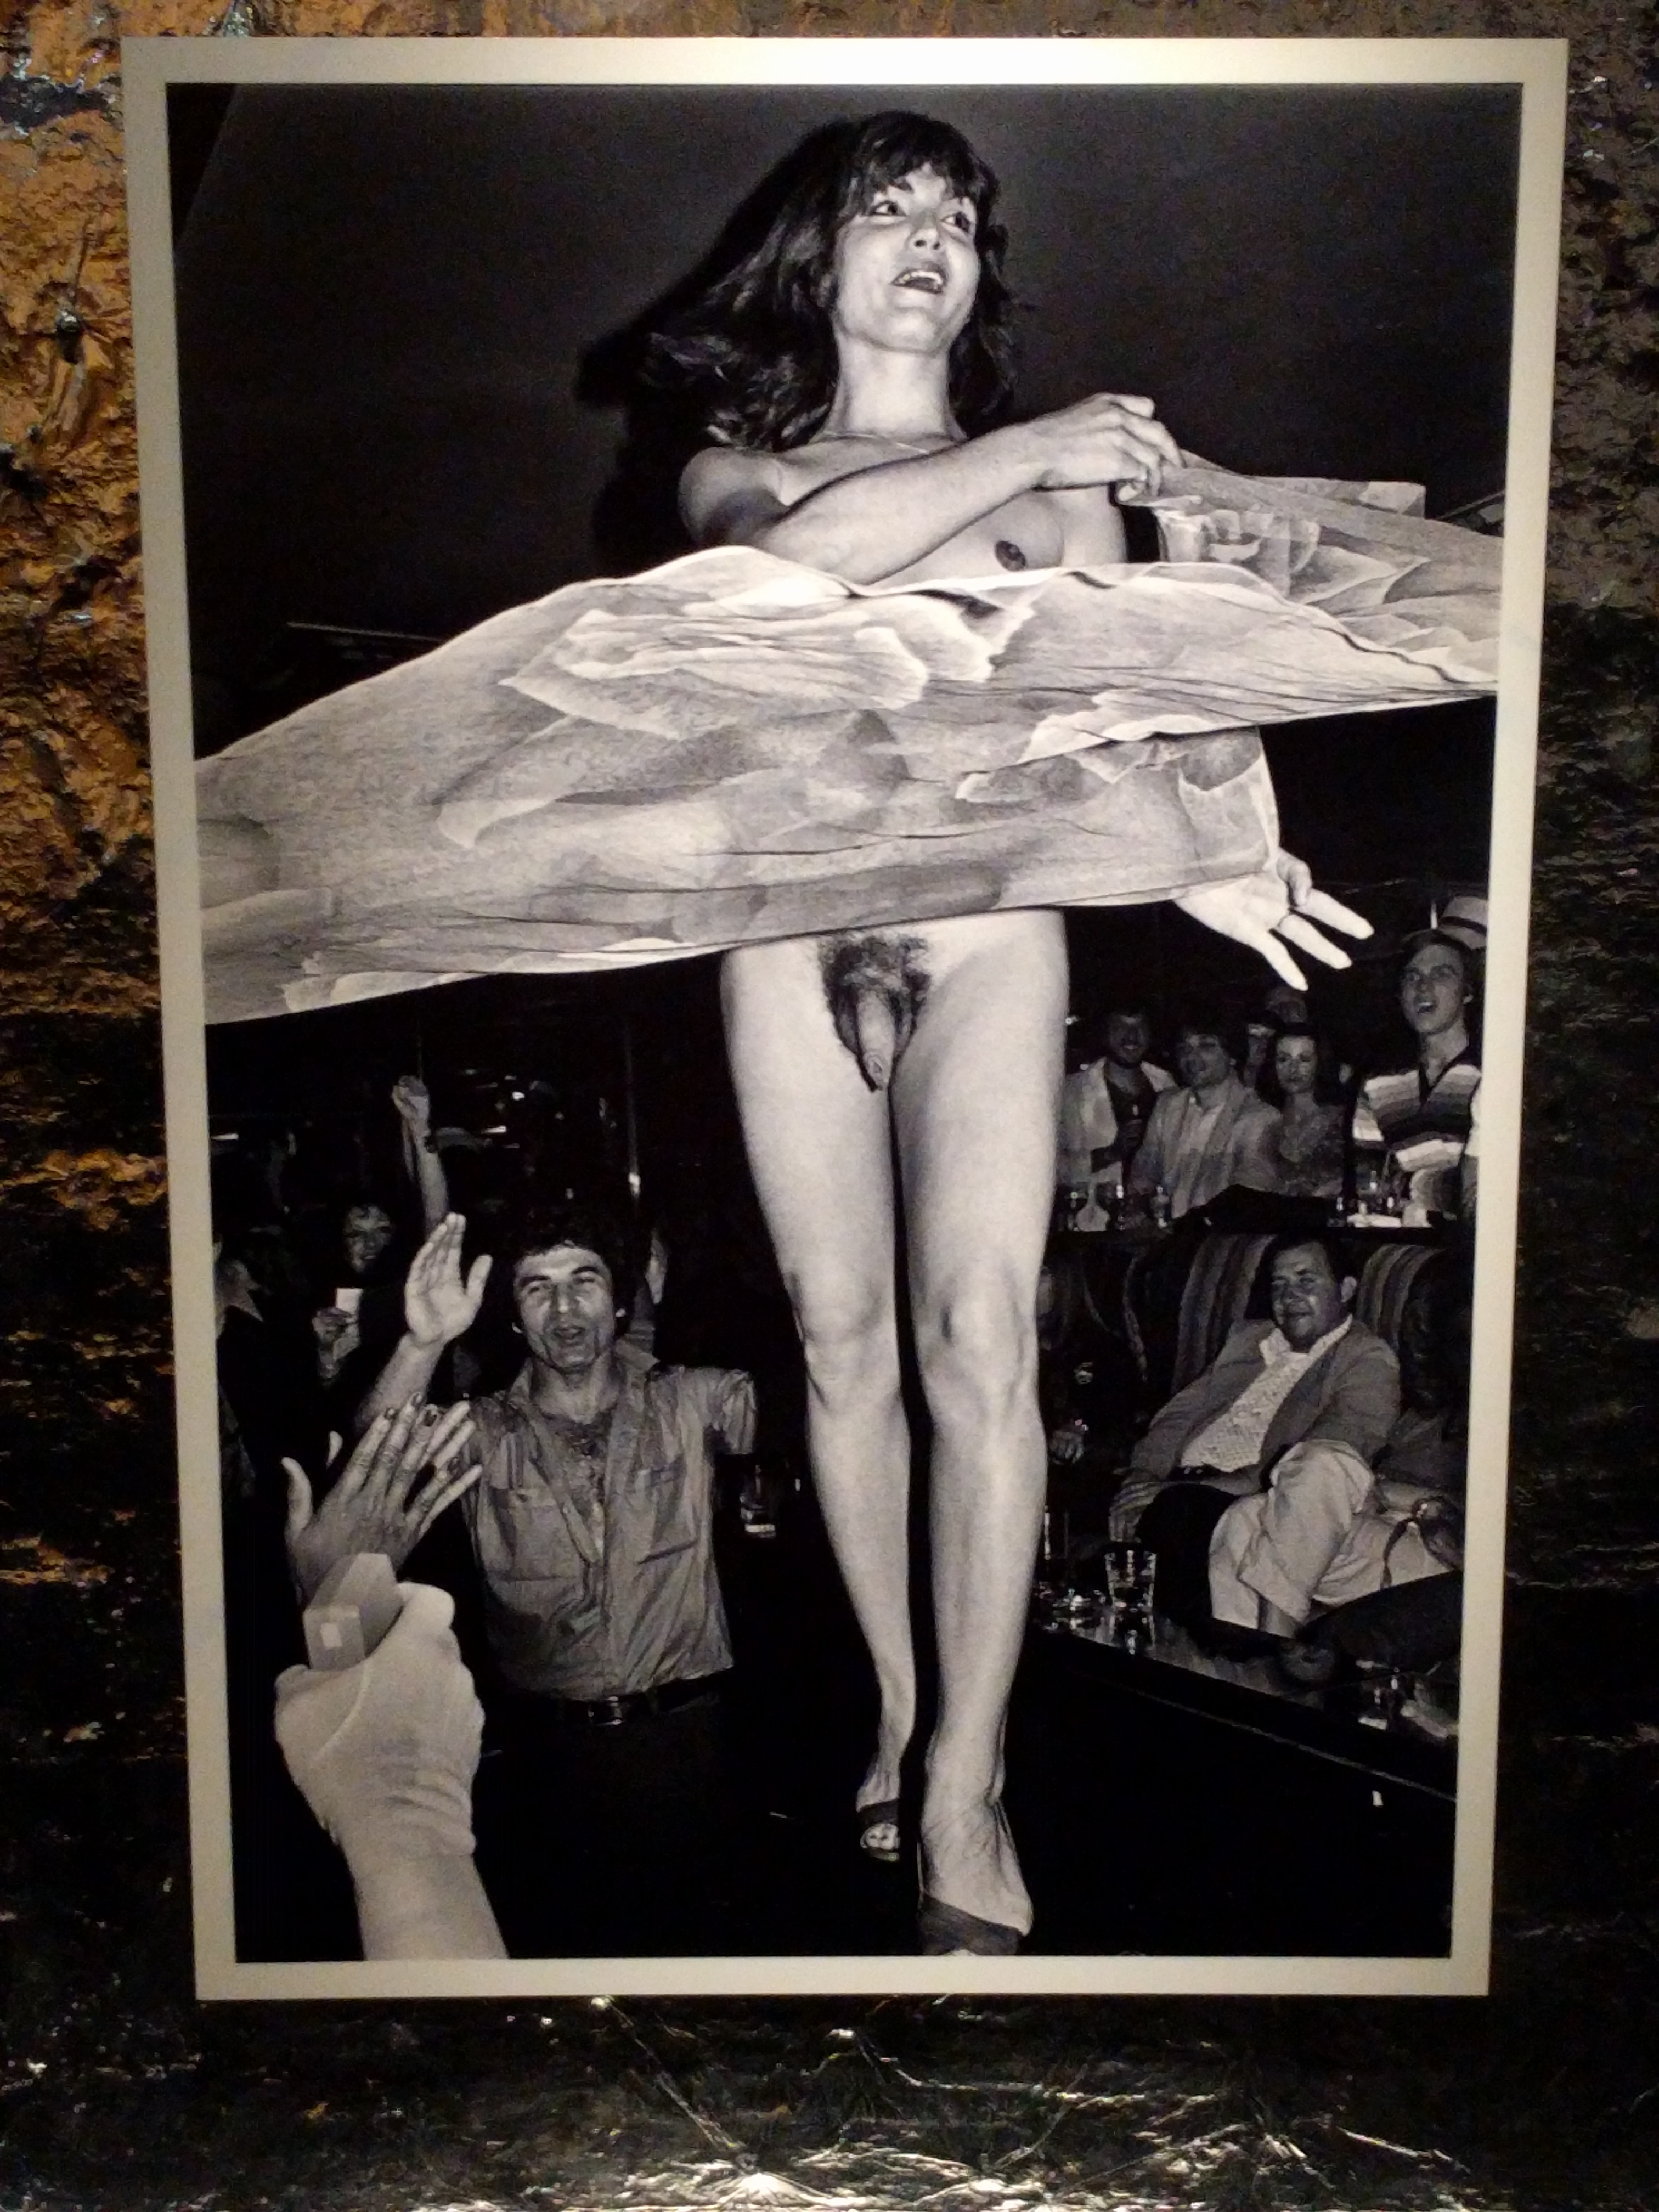 A múzeum egyik kiállítása az  1970-es években megnyílt legmenőbb new york-i éjszakai klubokat mutatta be, ahol igen szabadosan kezelték a szexhez való viszonyt. 